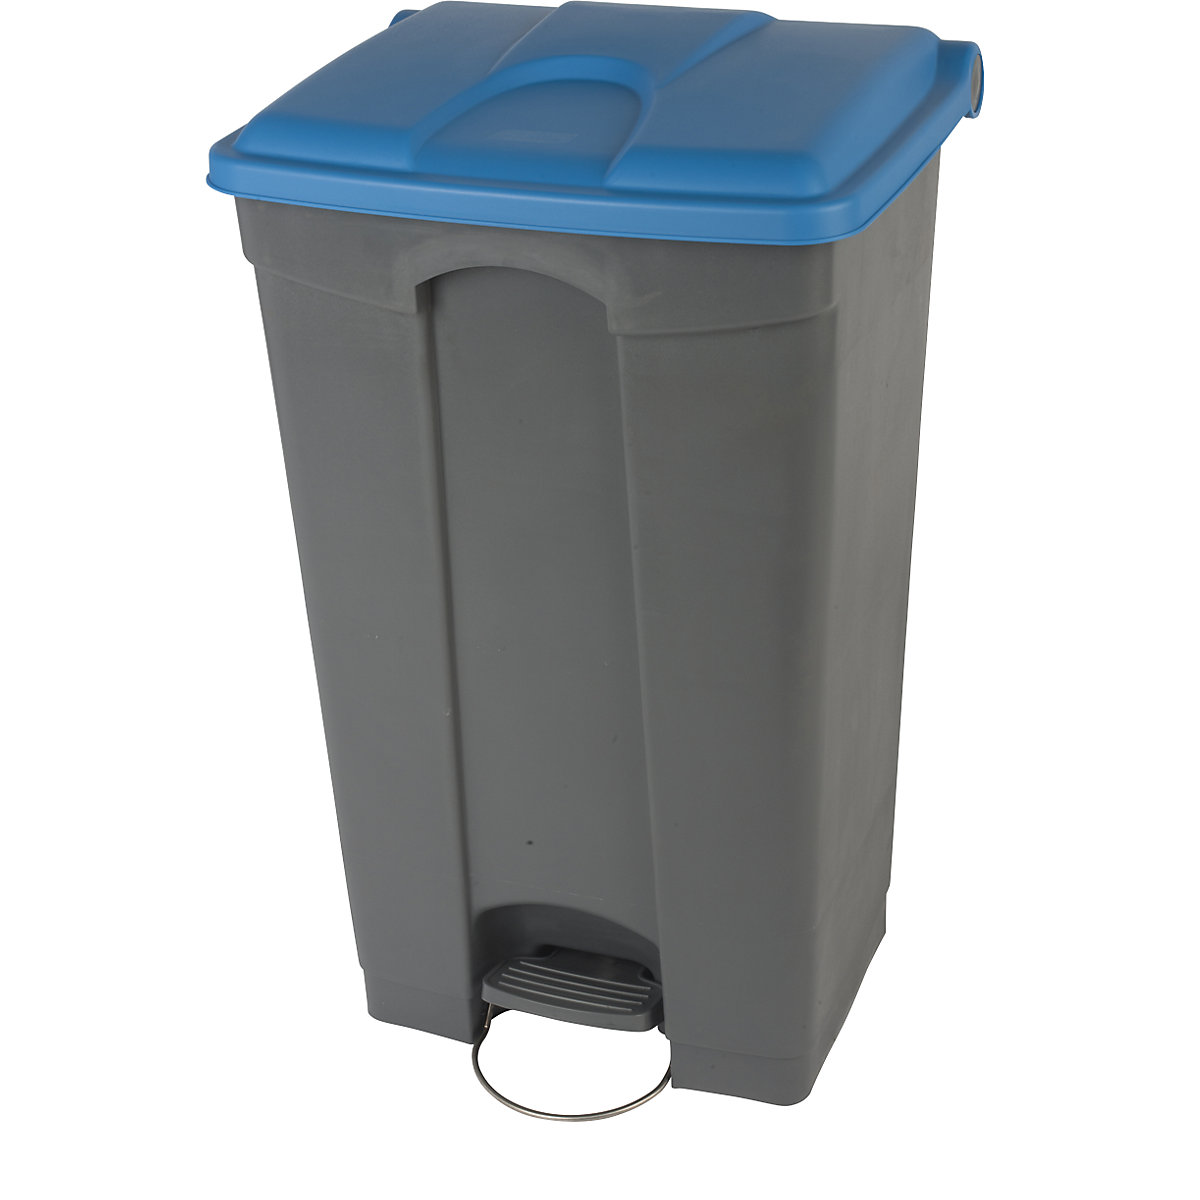 EUROKRAFTbasic – Nádoba na odpad s pedálem, objem 90 l, š x v x h 505 x 790 x 410 mm, šedá, modré víko